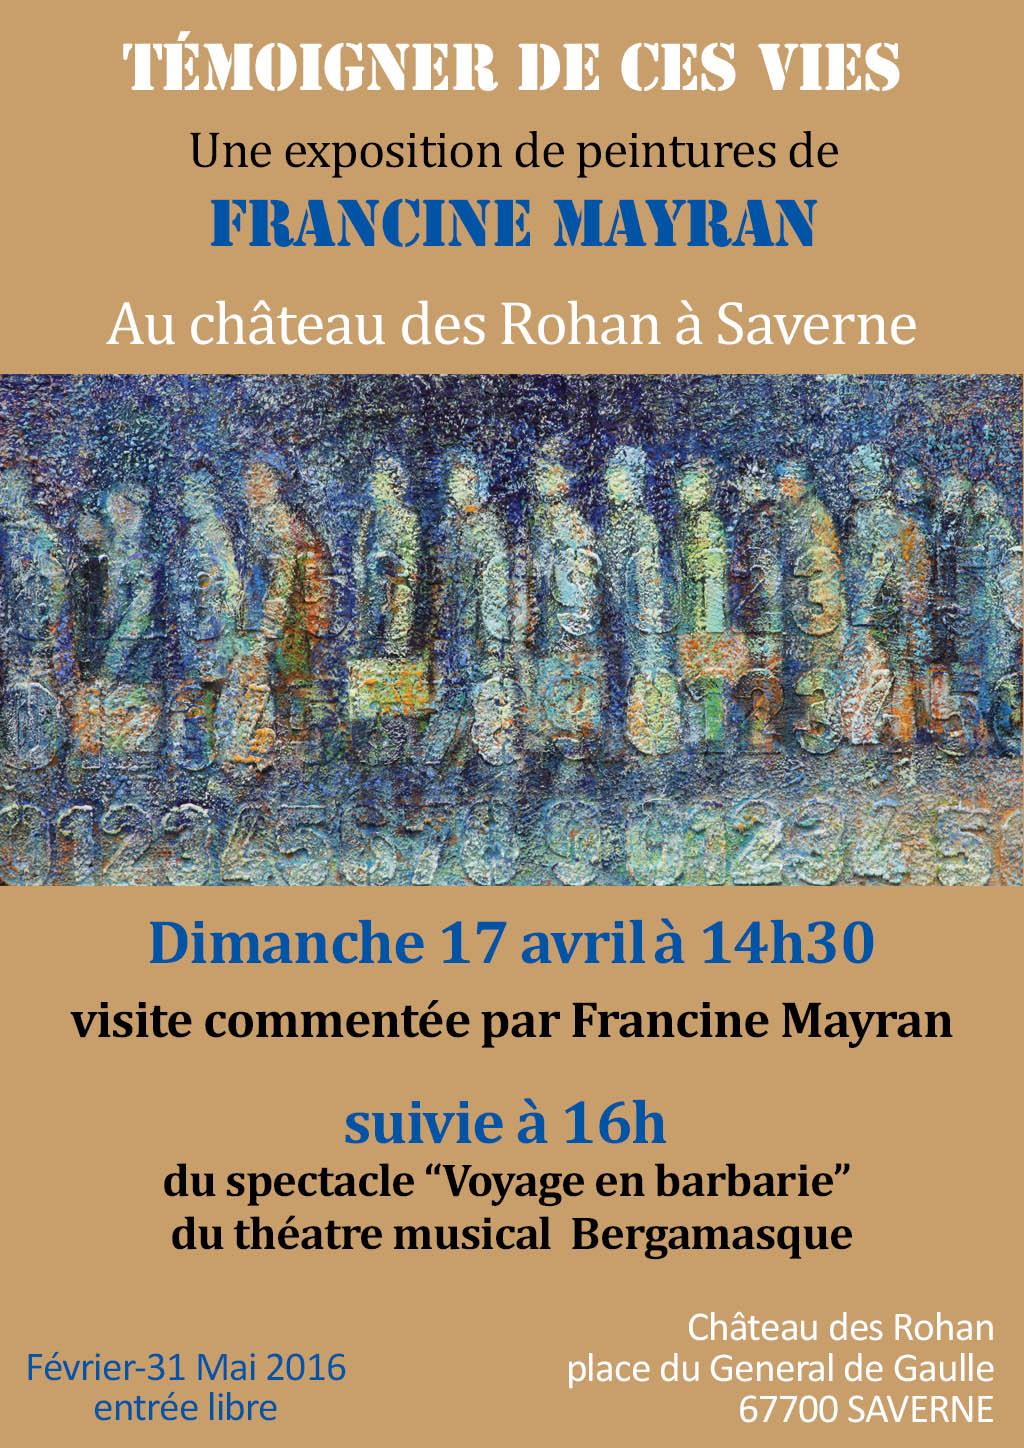 SAVERNE (67). Château des Rohan. Exposition